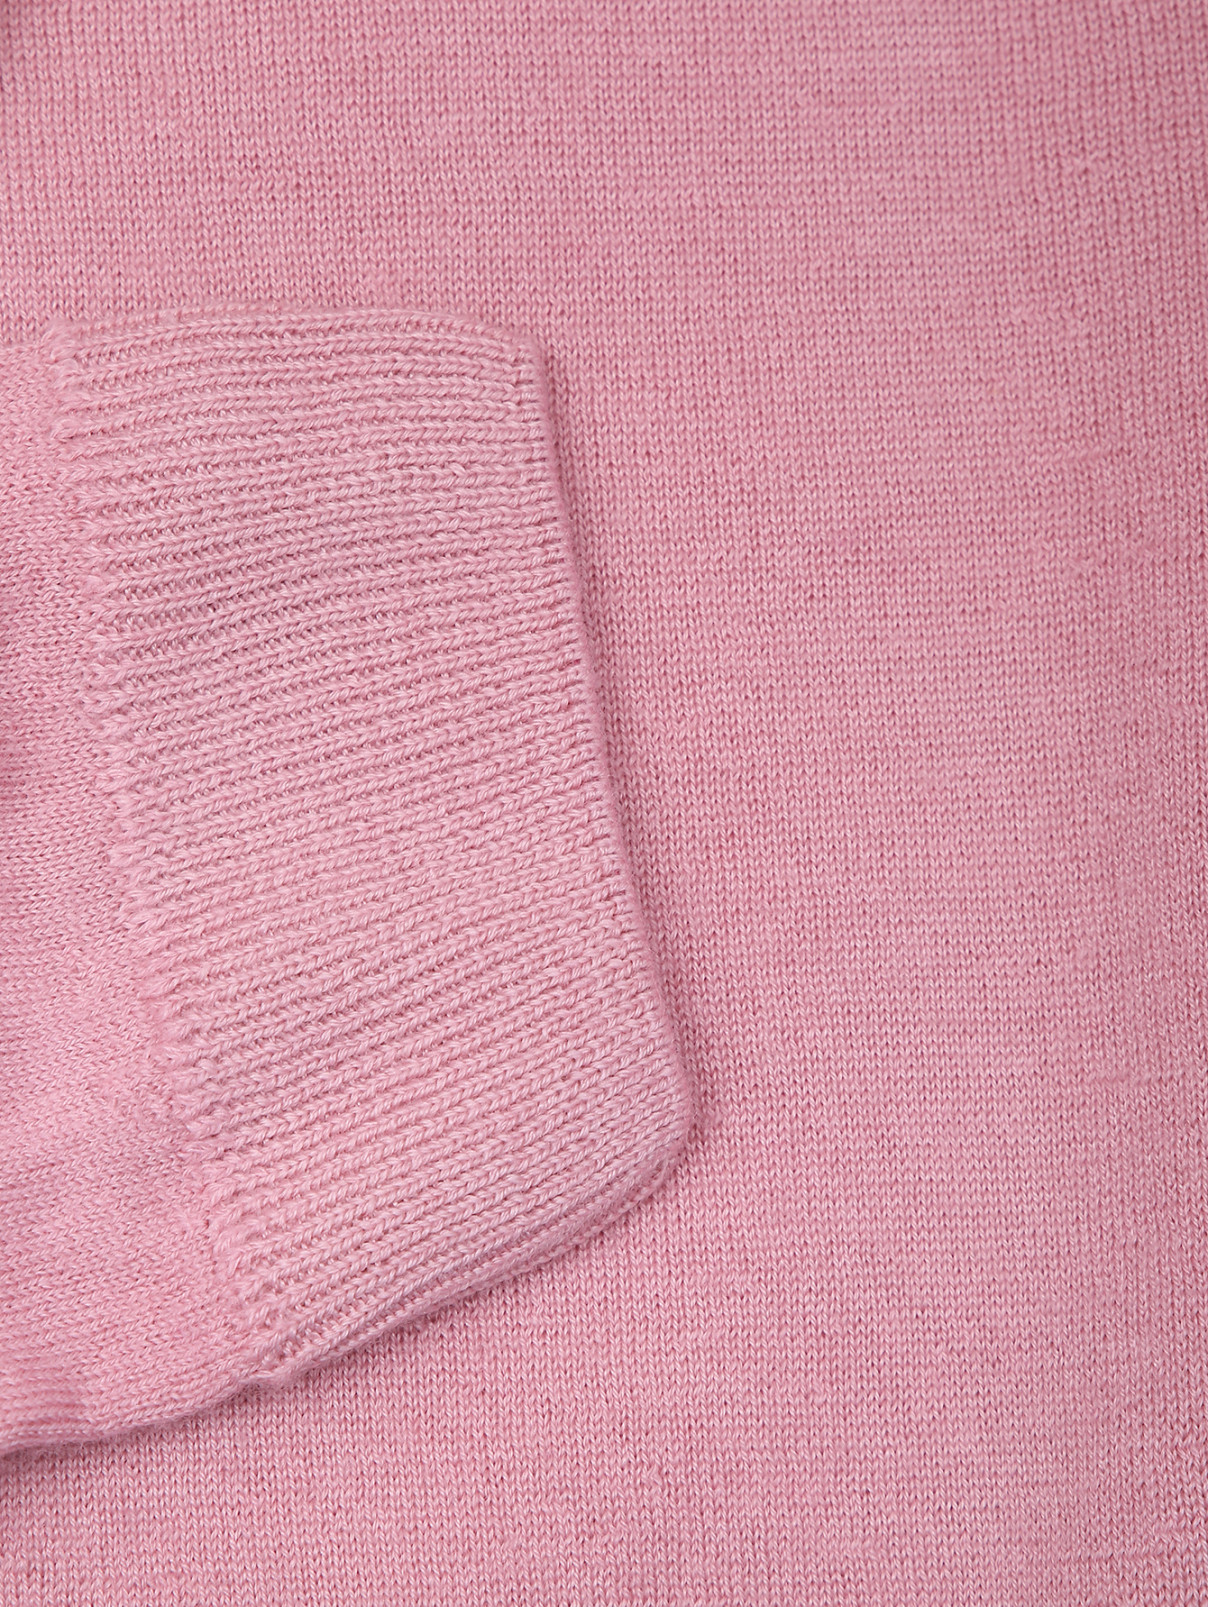 Однотонная водолазка из кашемира и шелка Aurora  –  Деталь  – Цвет:  Розовый